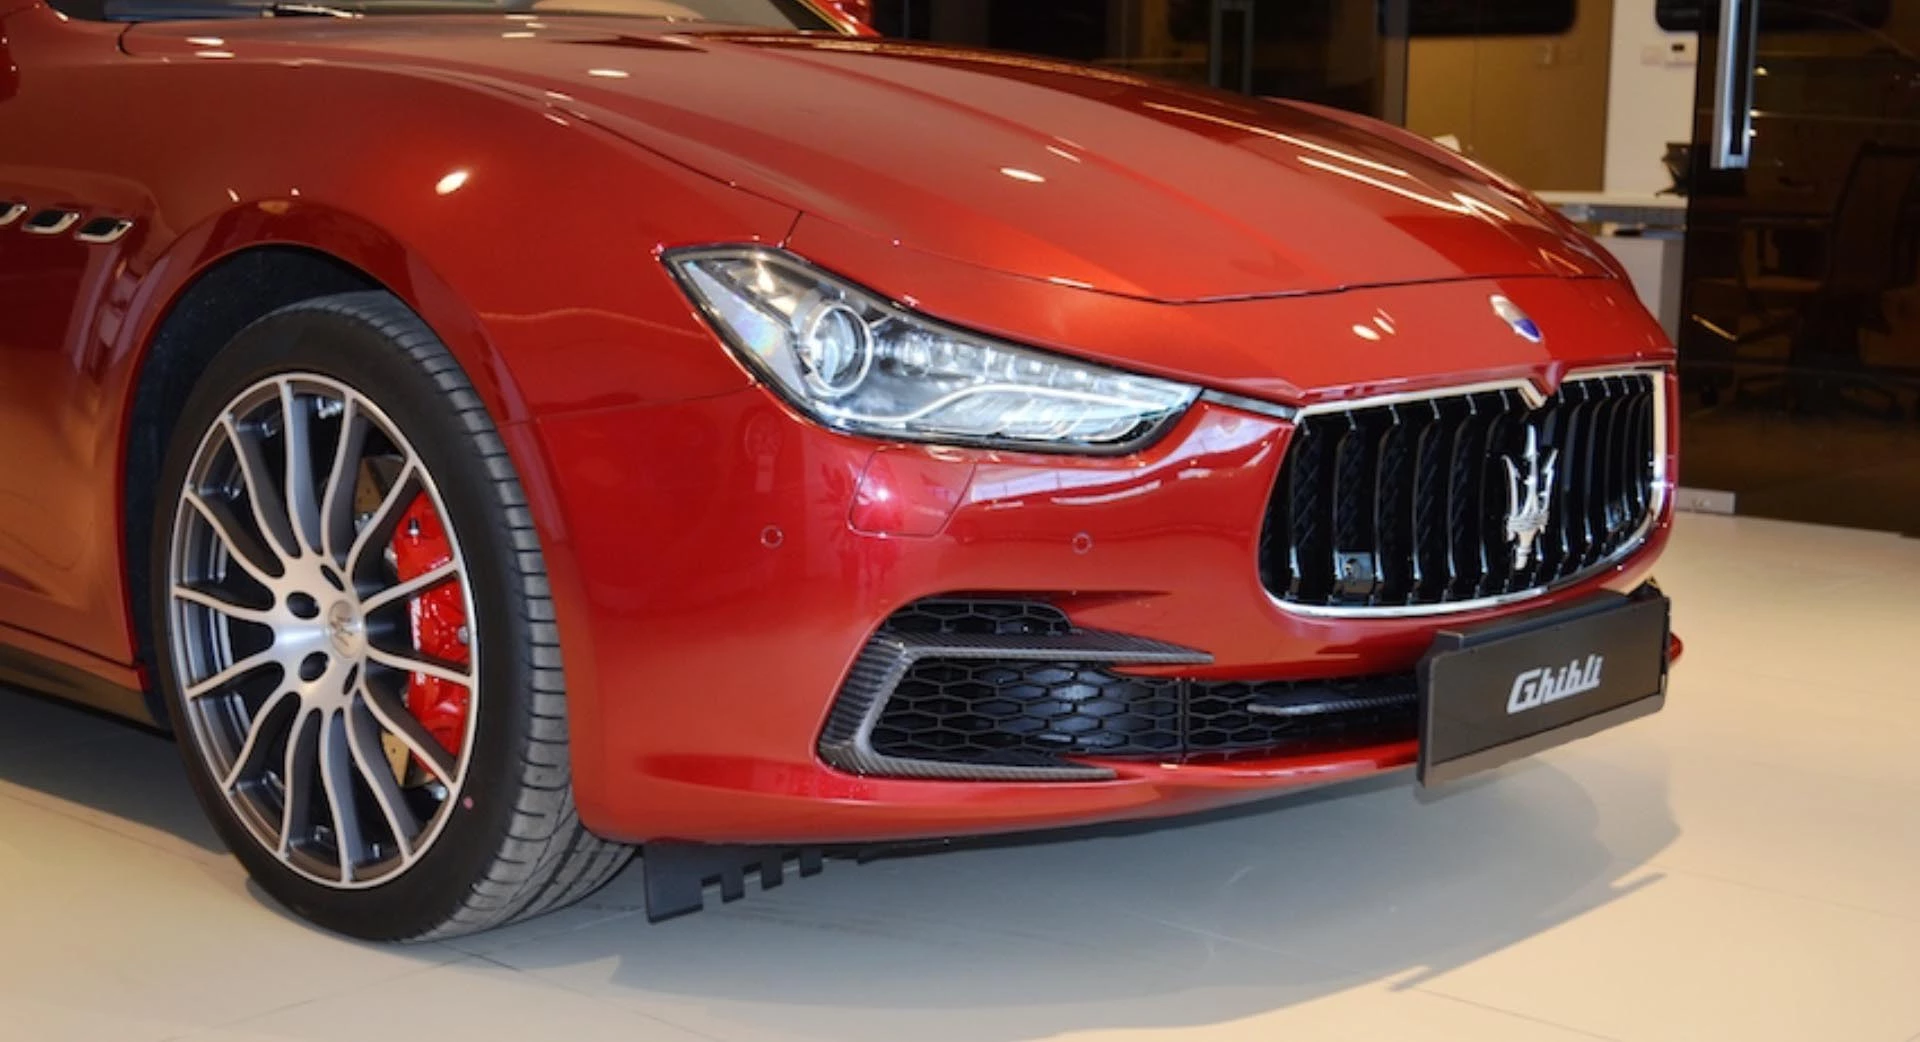 Kaufen Sie einen Frontstoßstangen-Splitter aus Karbonfaser für den Maserati Ghibli Modena 4trg. in Rot